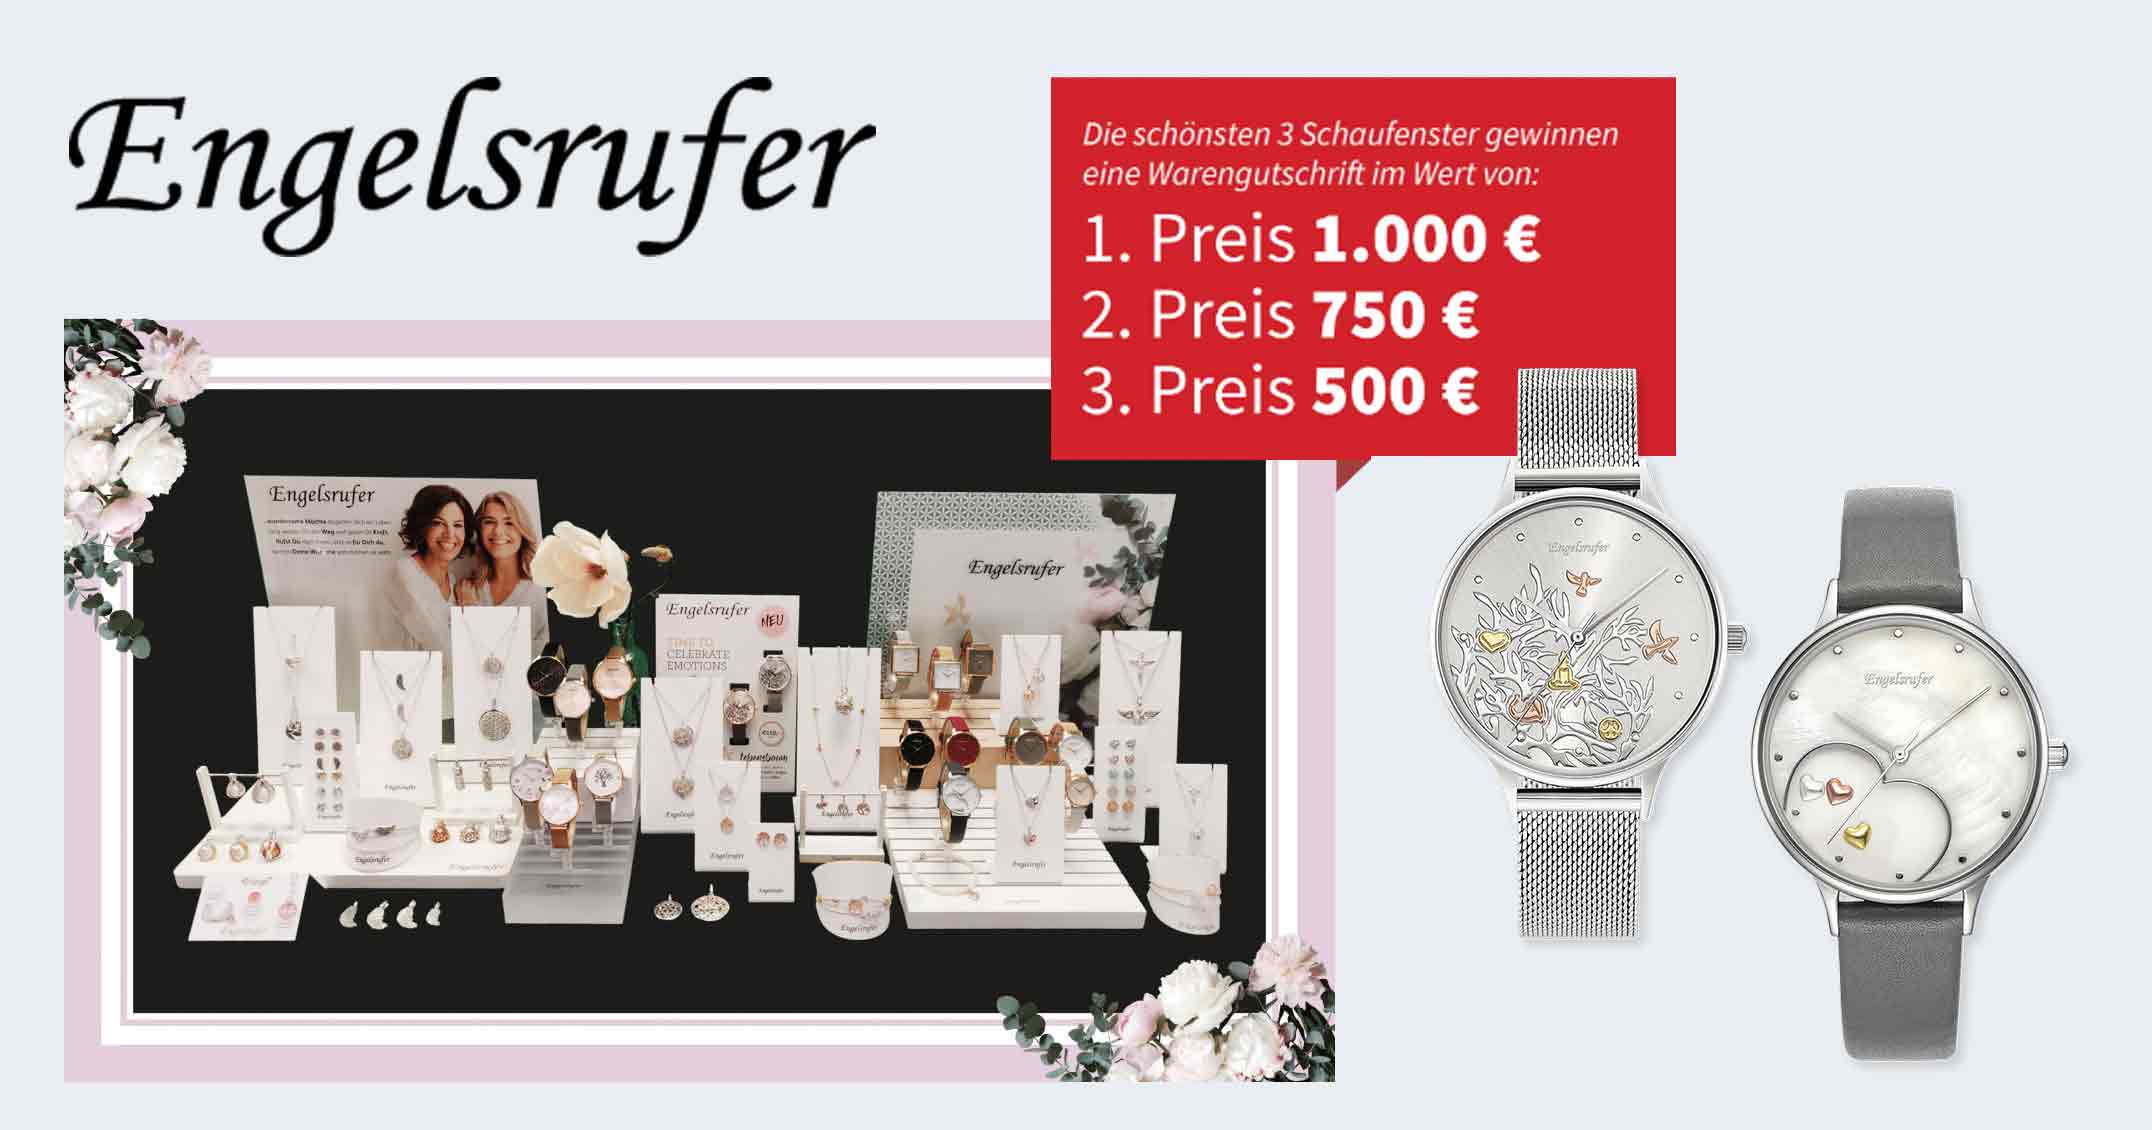 Wer gestaltet das schönste Schaufenster mit Uhren und Schmuck von Engelsrufer? Es winken 1.000 Euro.